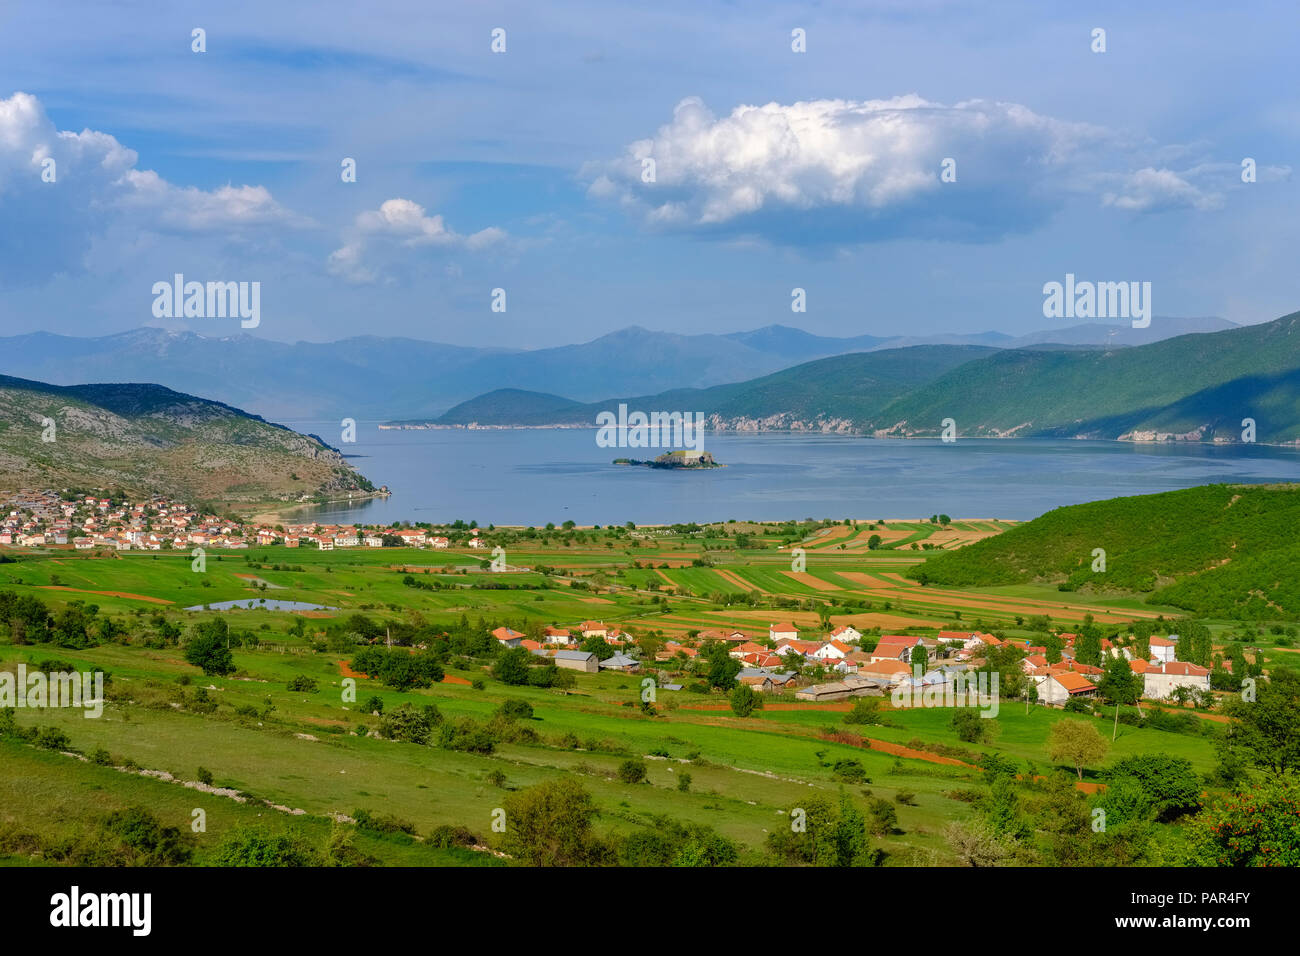 L'Albanie, le Parc National de Prespa, le lac Prespa avec Maligrad Island et les villages et Lejthize Liqenas, la Grèce et la Macédoine à l'arrière-plan Banque D'Images